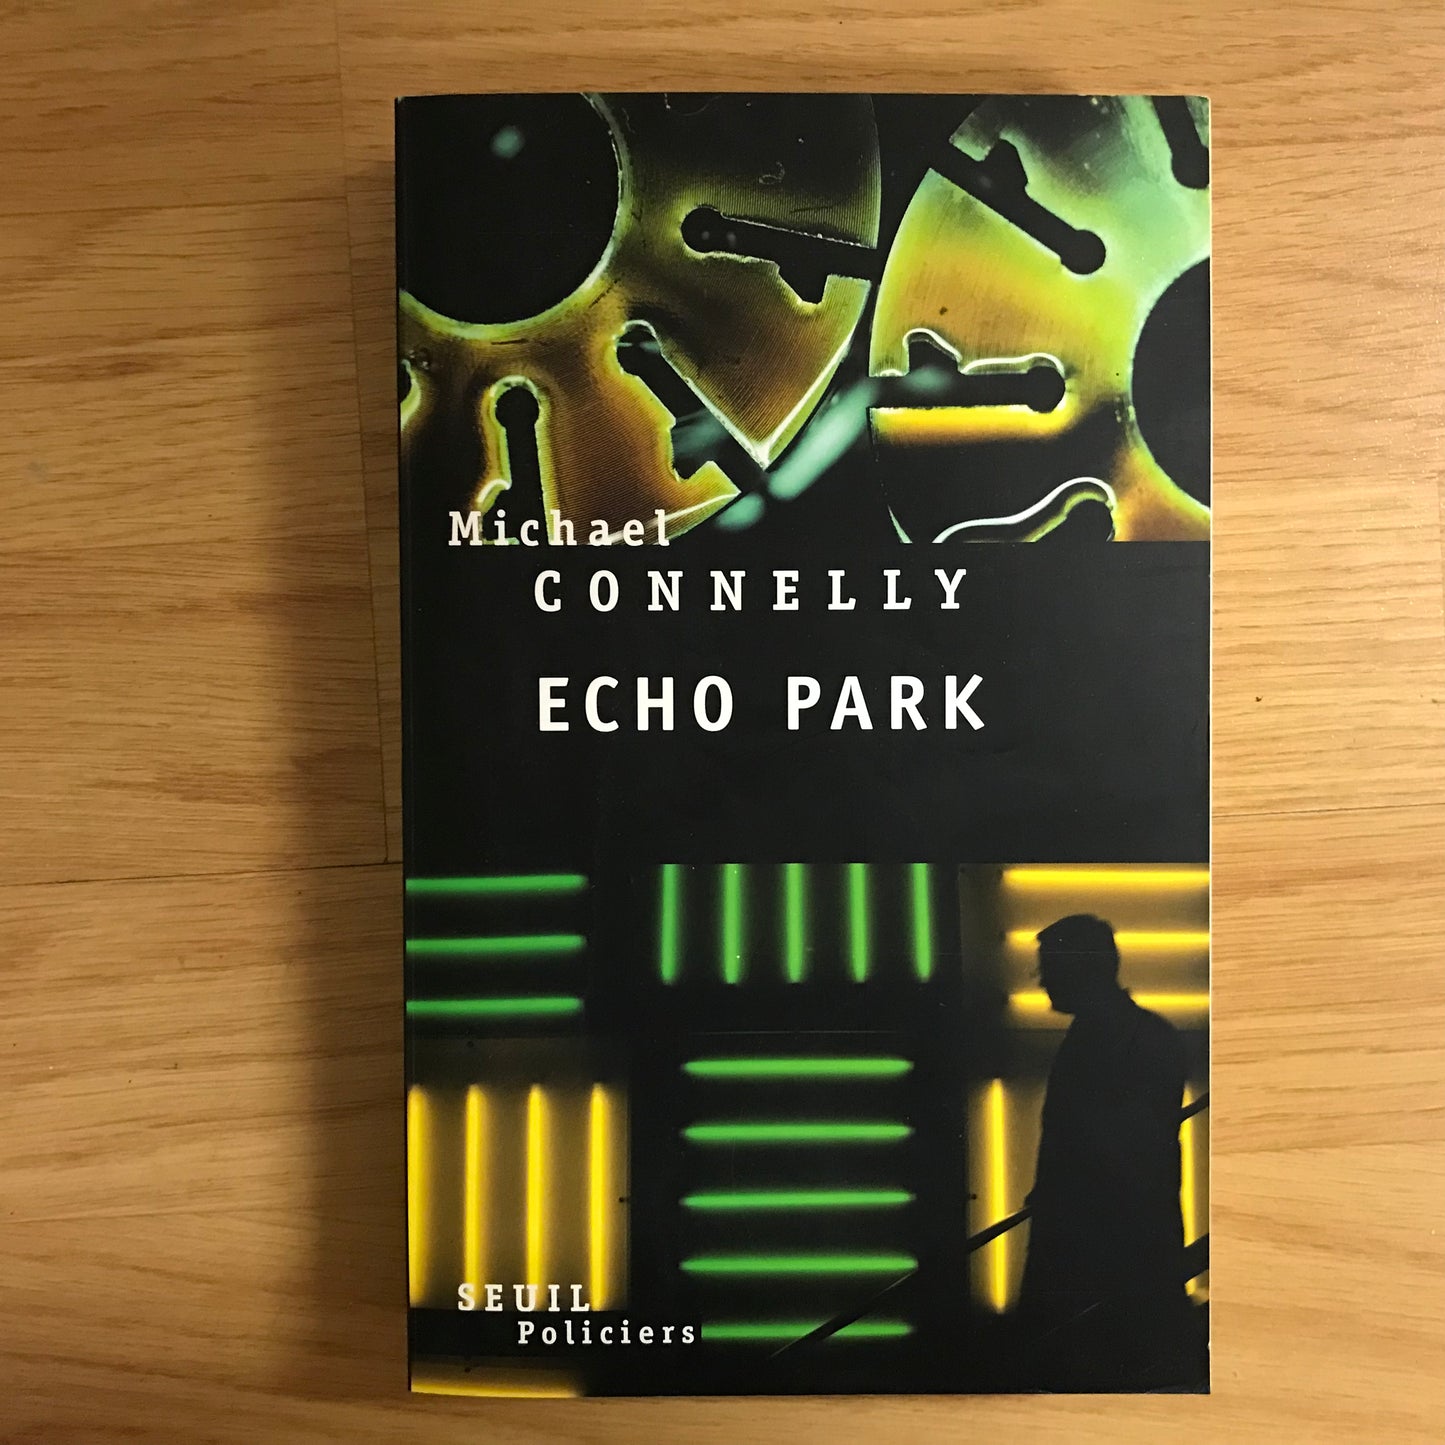 Connolly, Michael - Echo Park